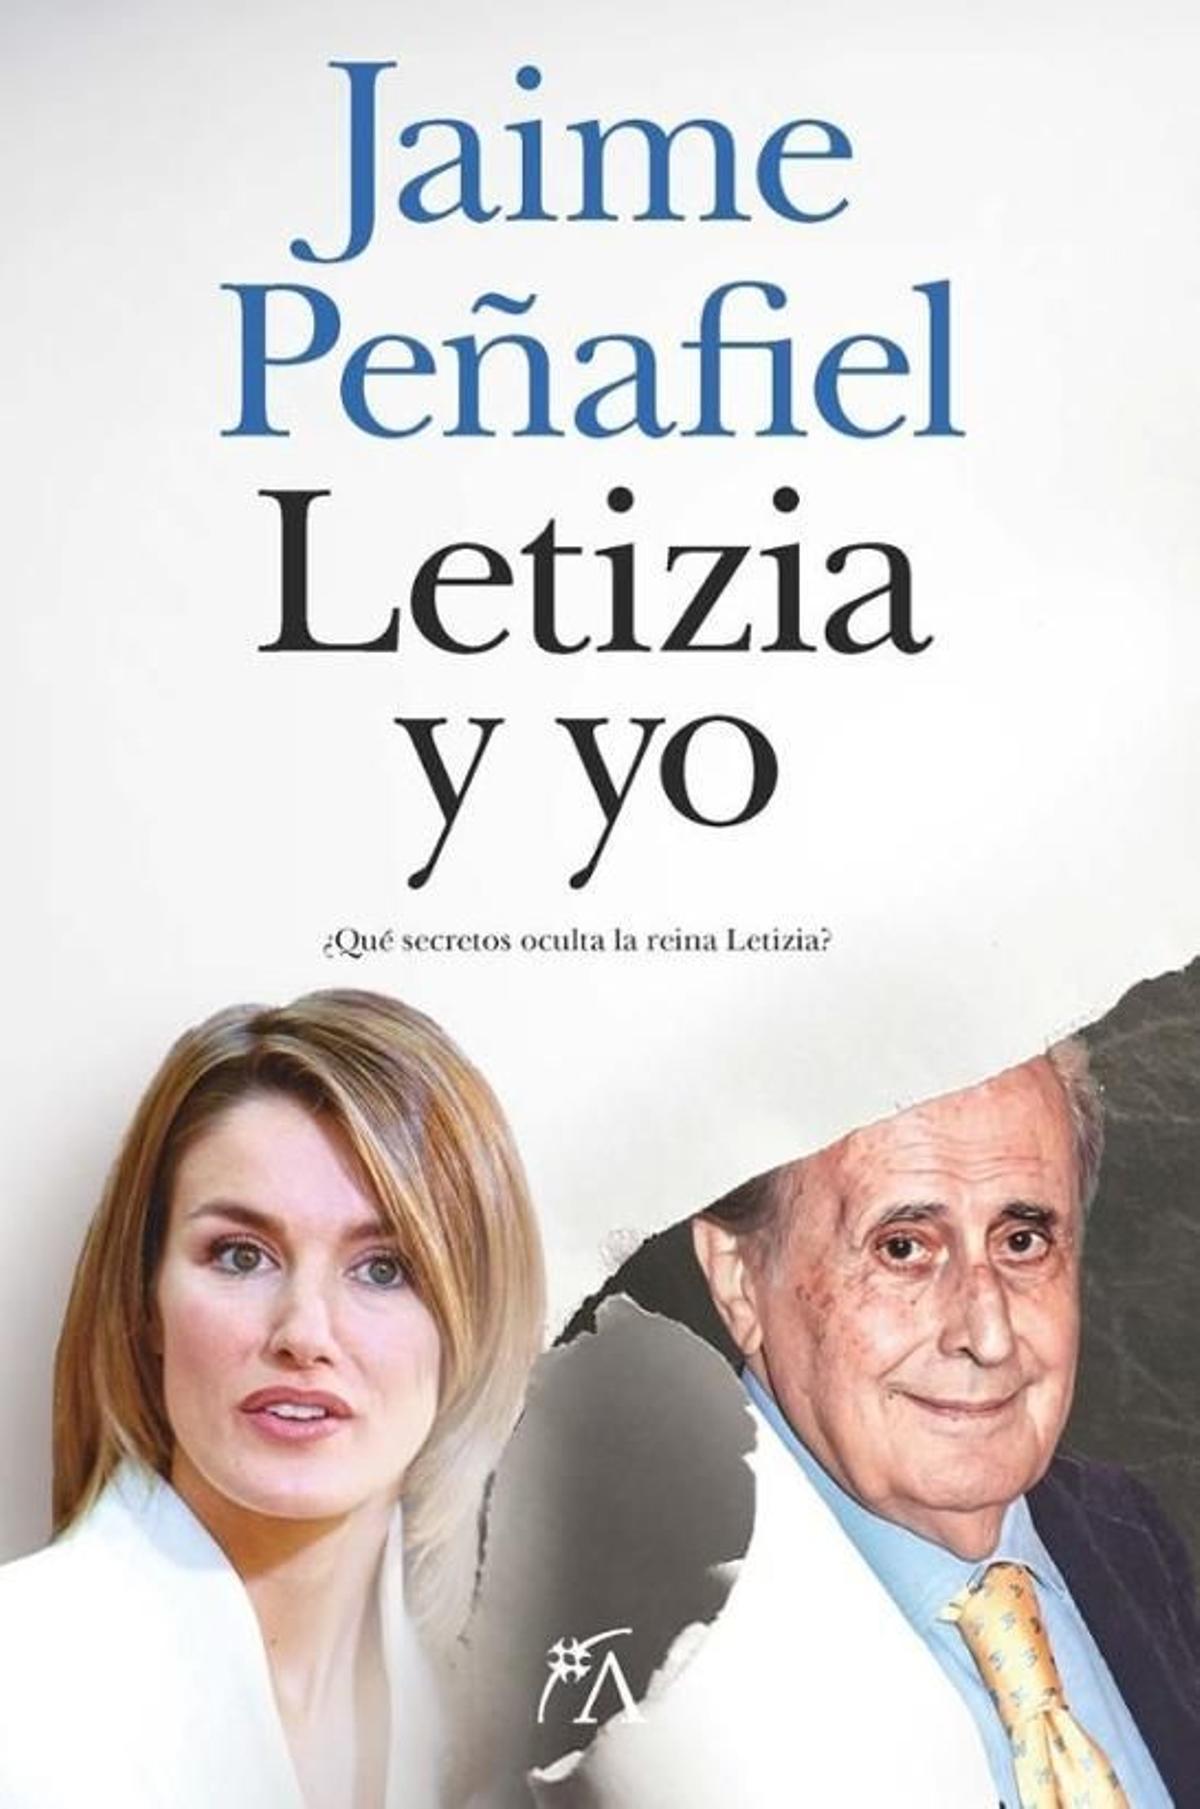 Cubierta del libro de Jaime Peñafiel, 'Letizia y yo. ¿Qué secretos oculta la reina Letizia?'.